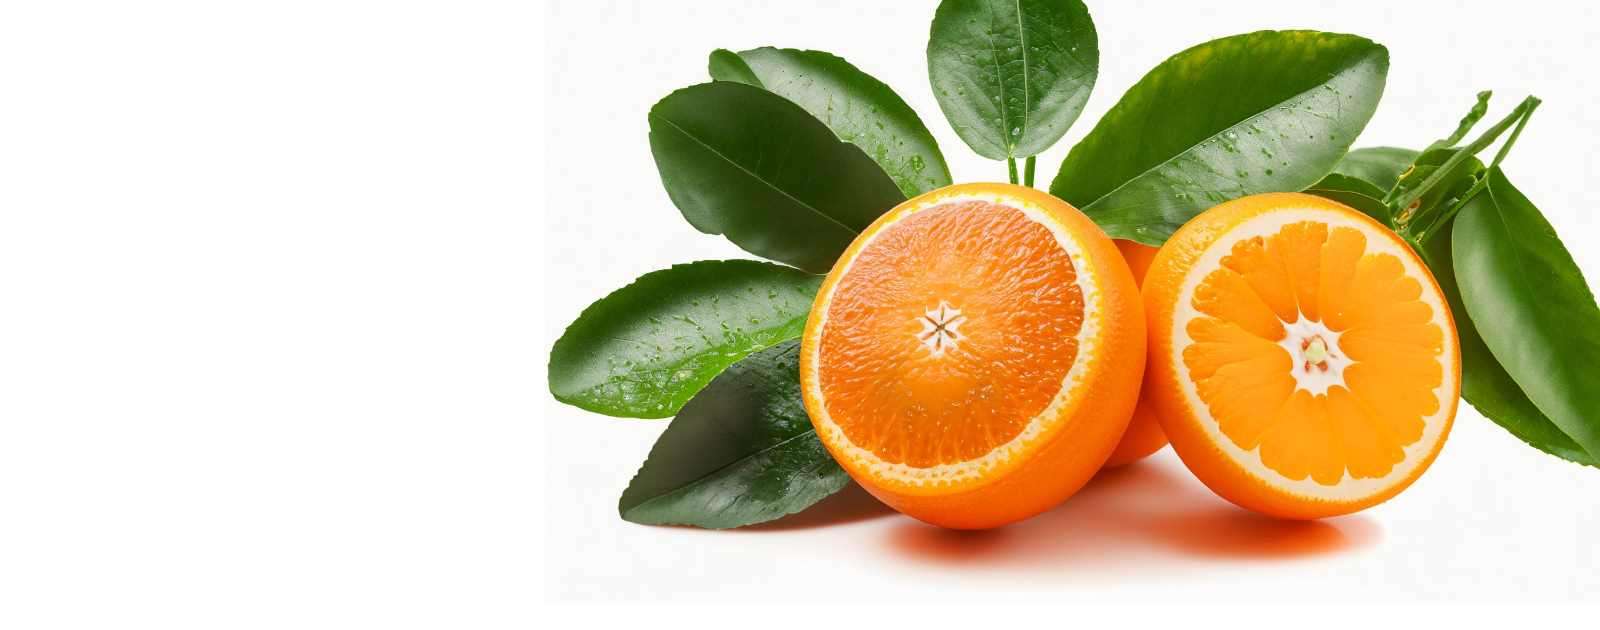 Is Orange a Melon or a Fruit